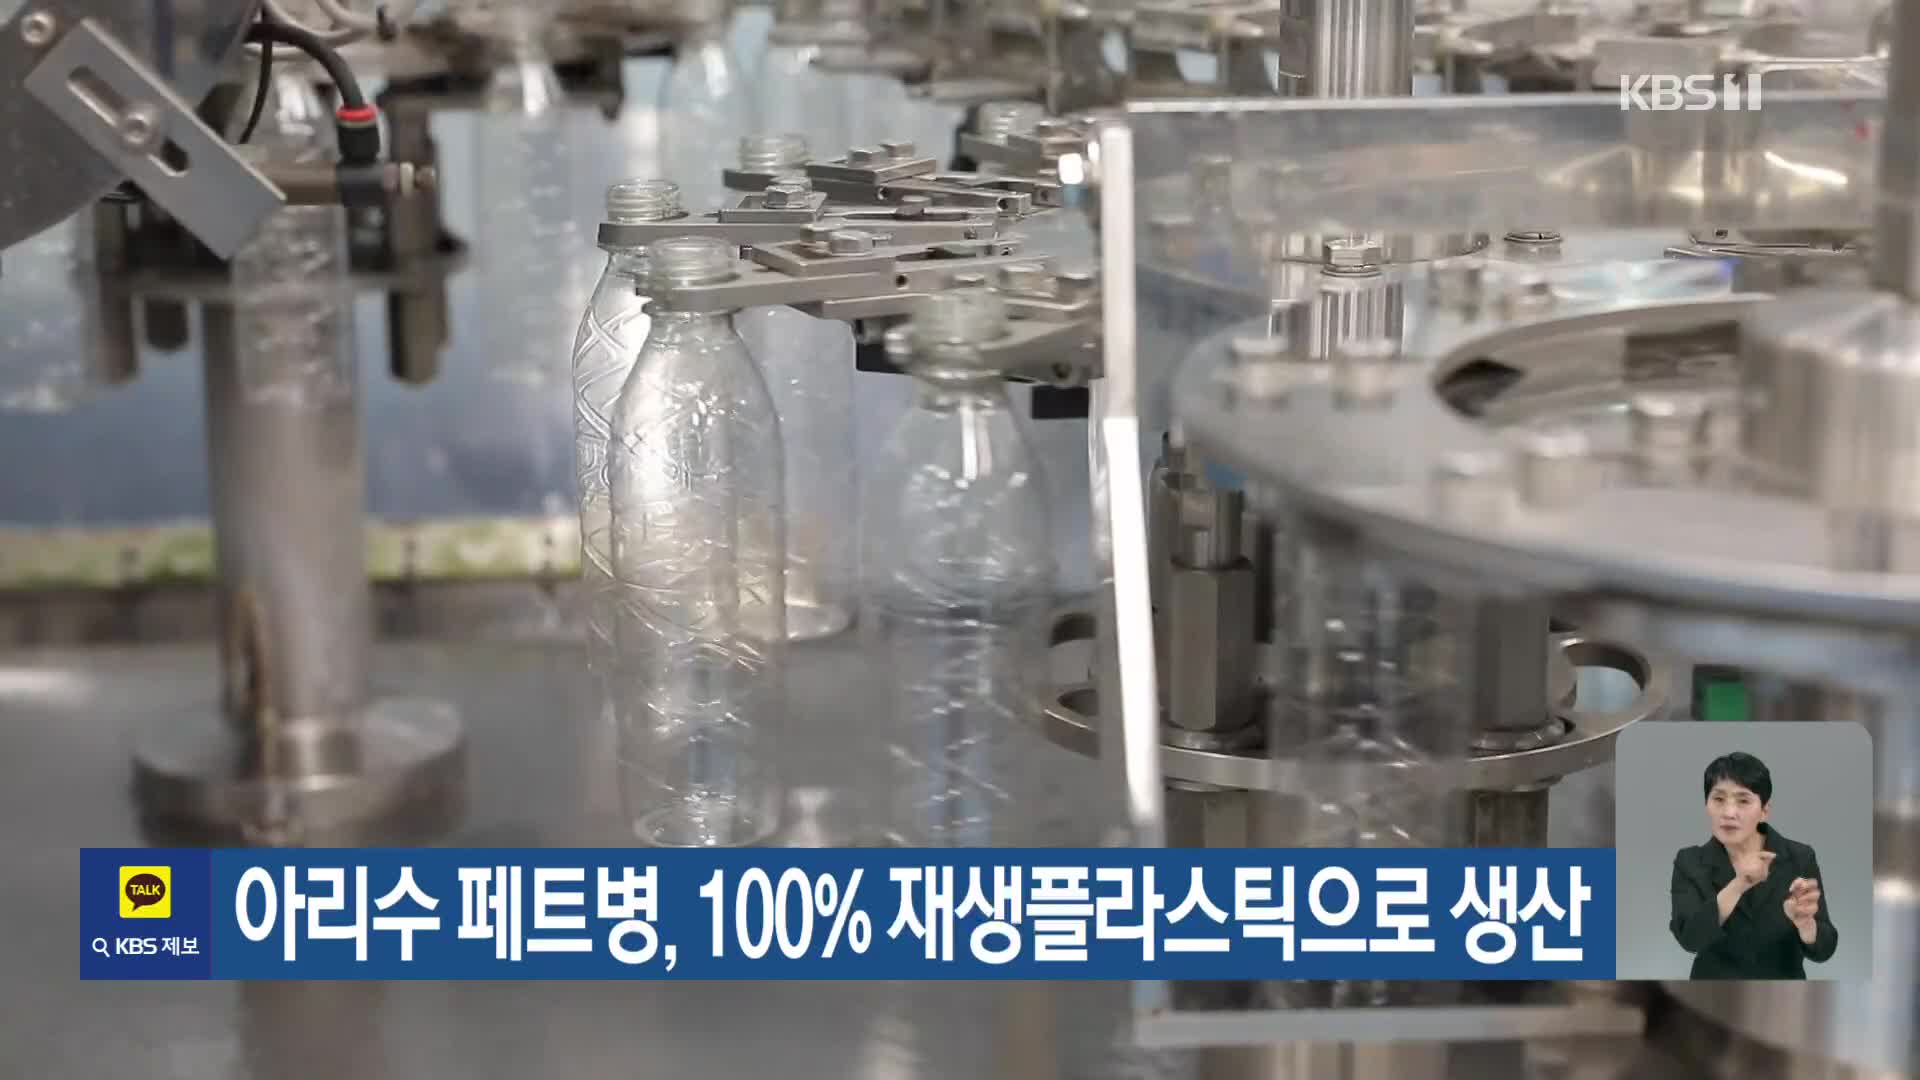 [기후는 말한다] 아리수 페트병, 100% 재생플라스틱으로 생산